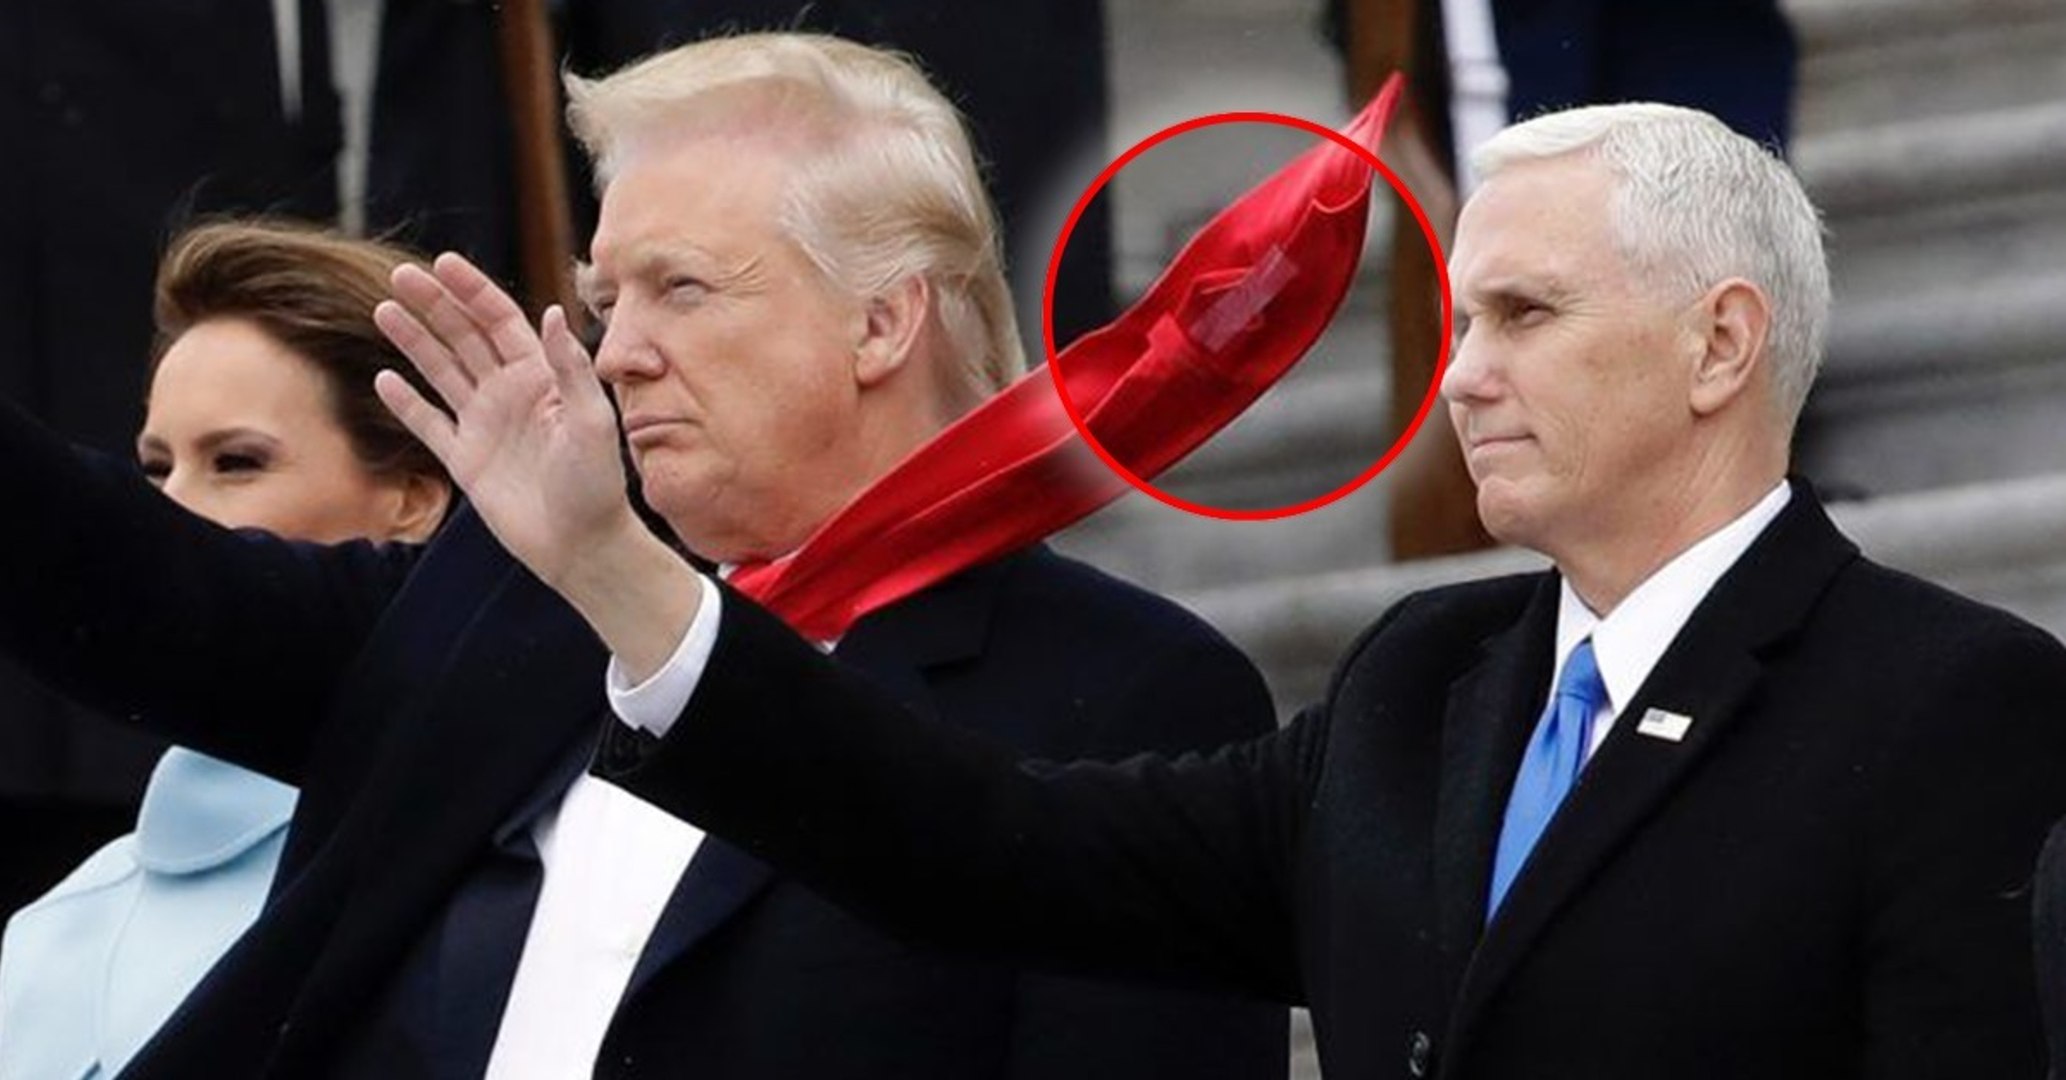 Donald Trump : pourquoi attache-t-il du scotch sur sa cravate ? Voici le  secret improbable du président - Vidéo Dailymotion